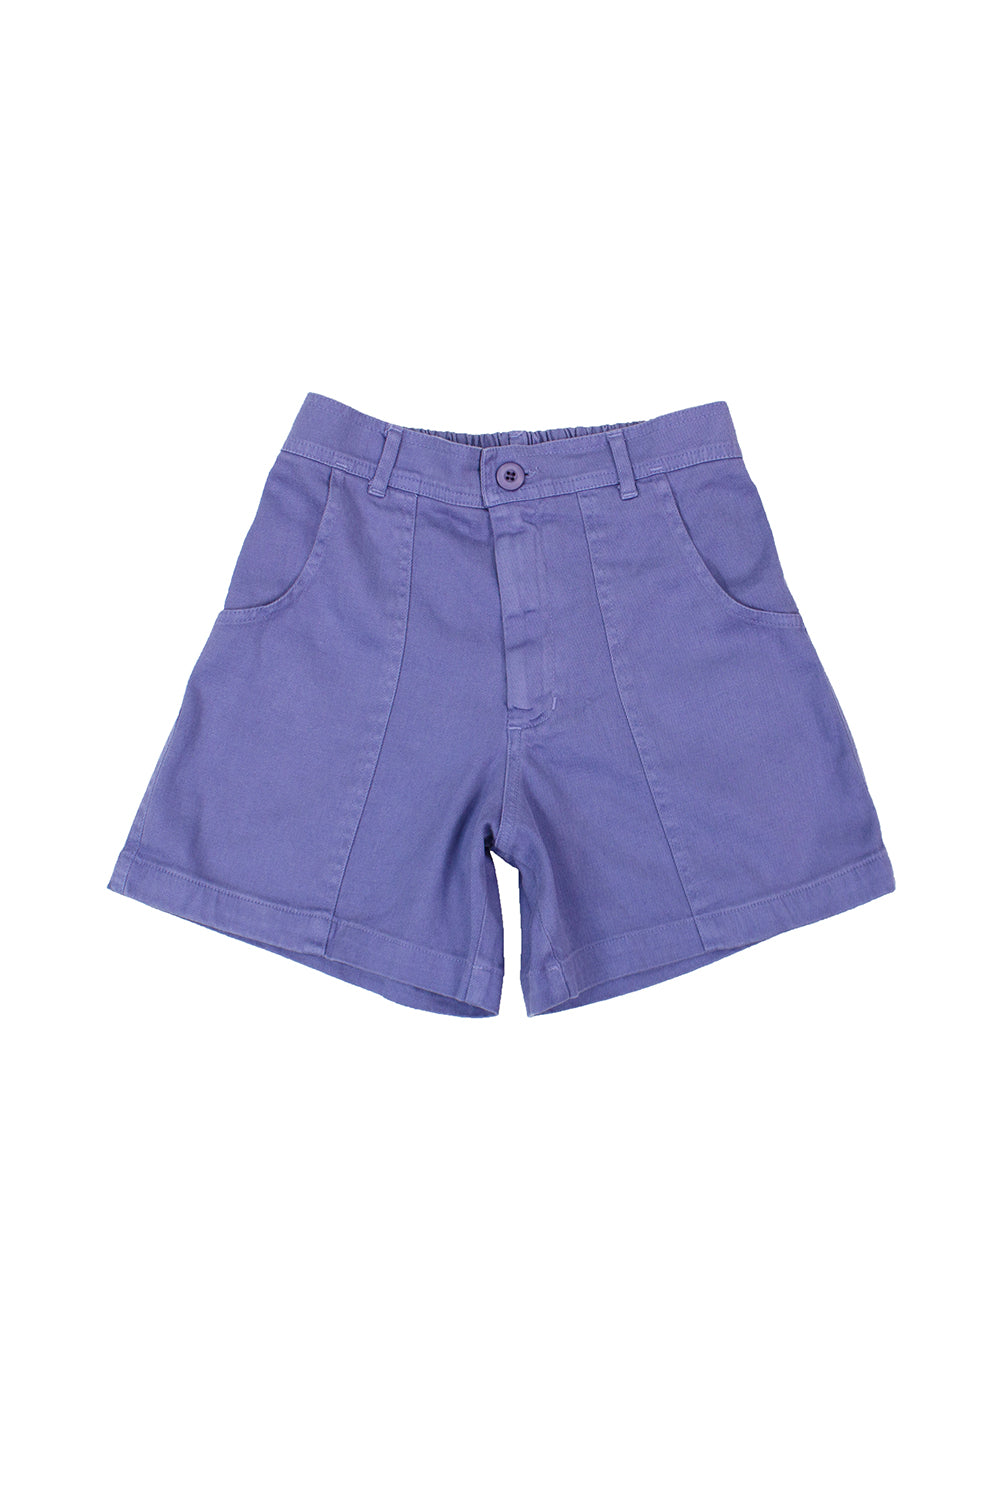 Purple underwear in stretch organic cotton - Violet